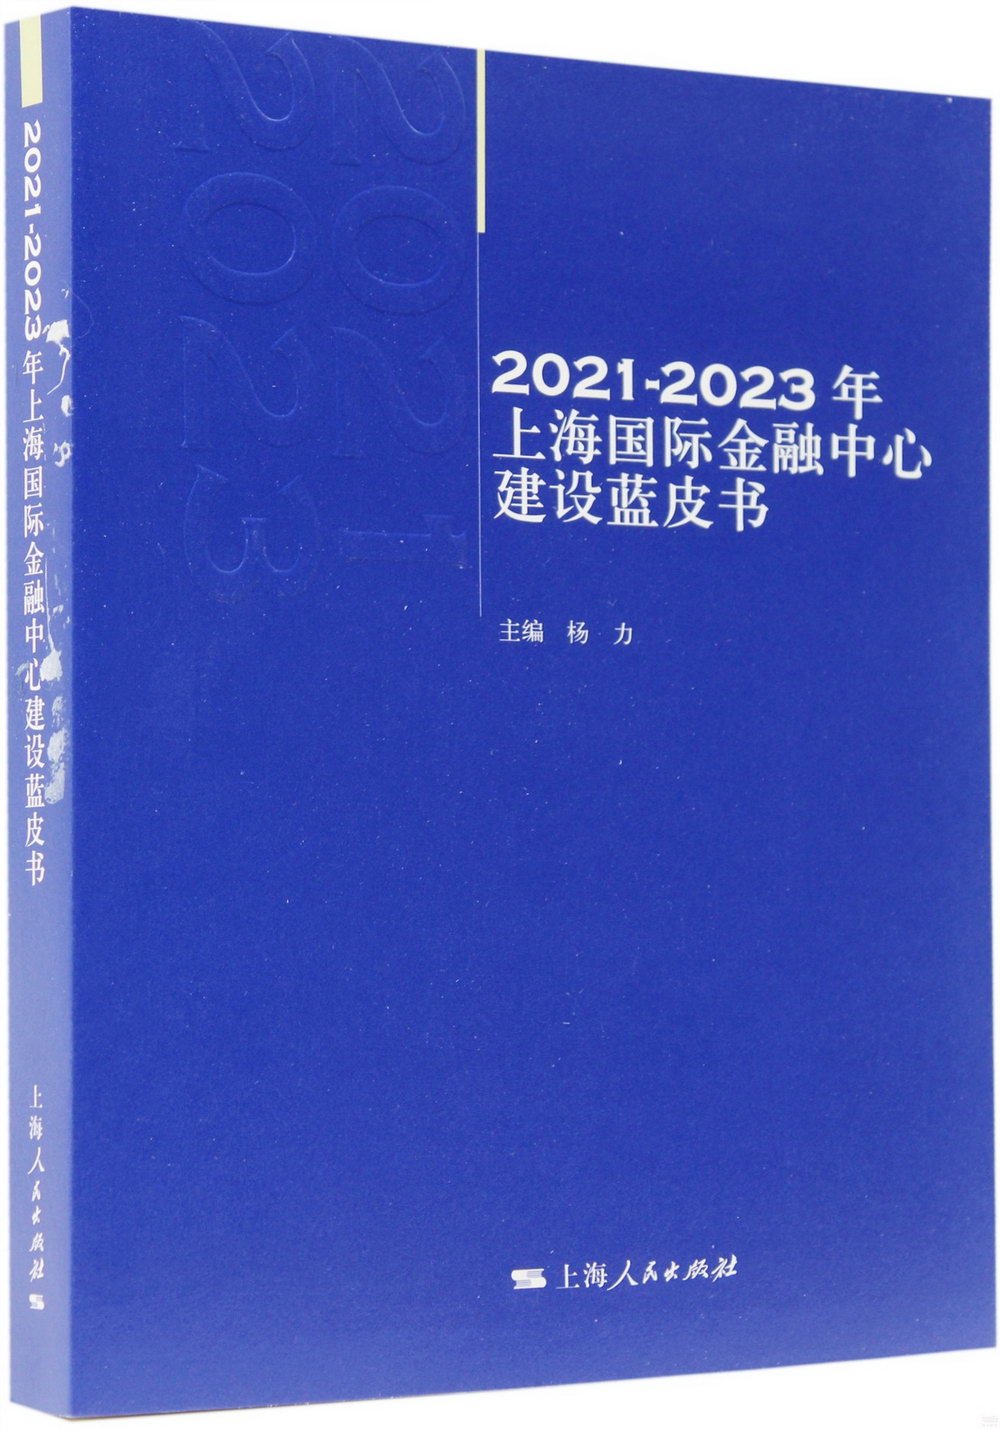 2021-2023年上海國際金融中心建設藍皮書